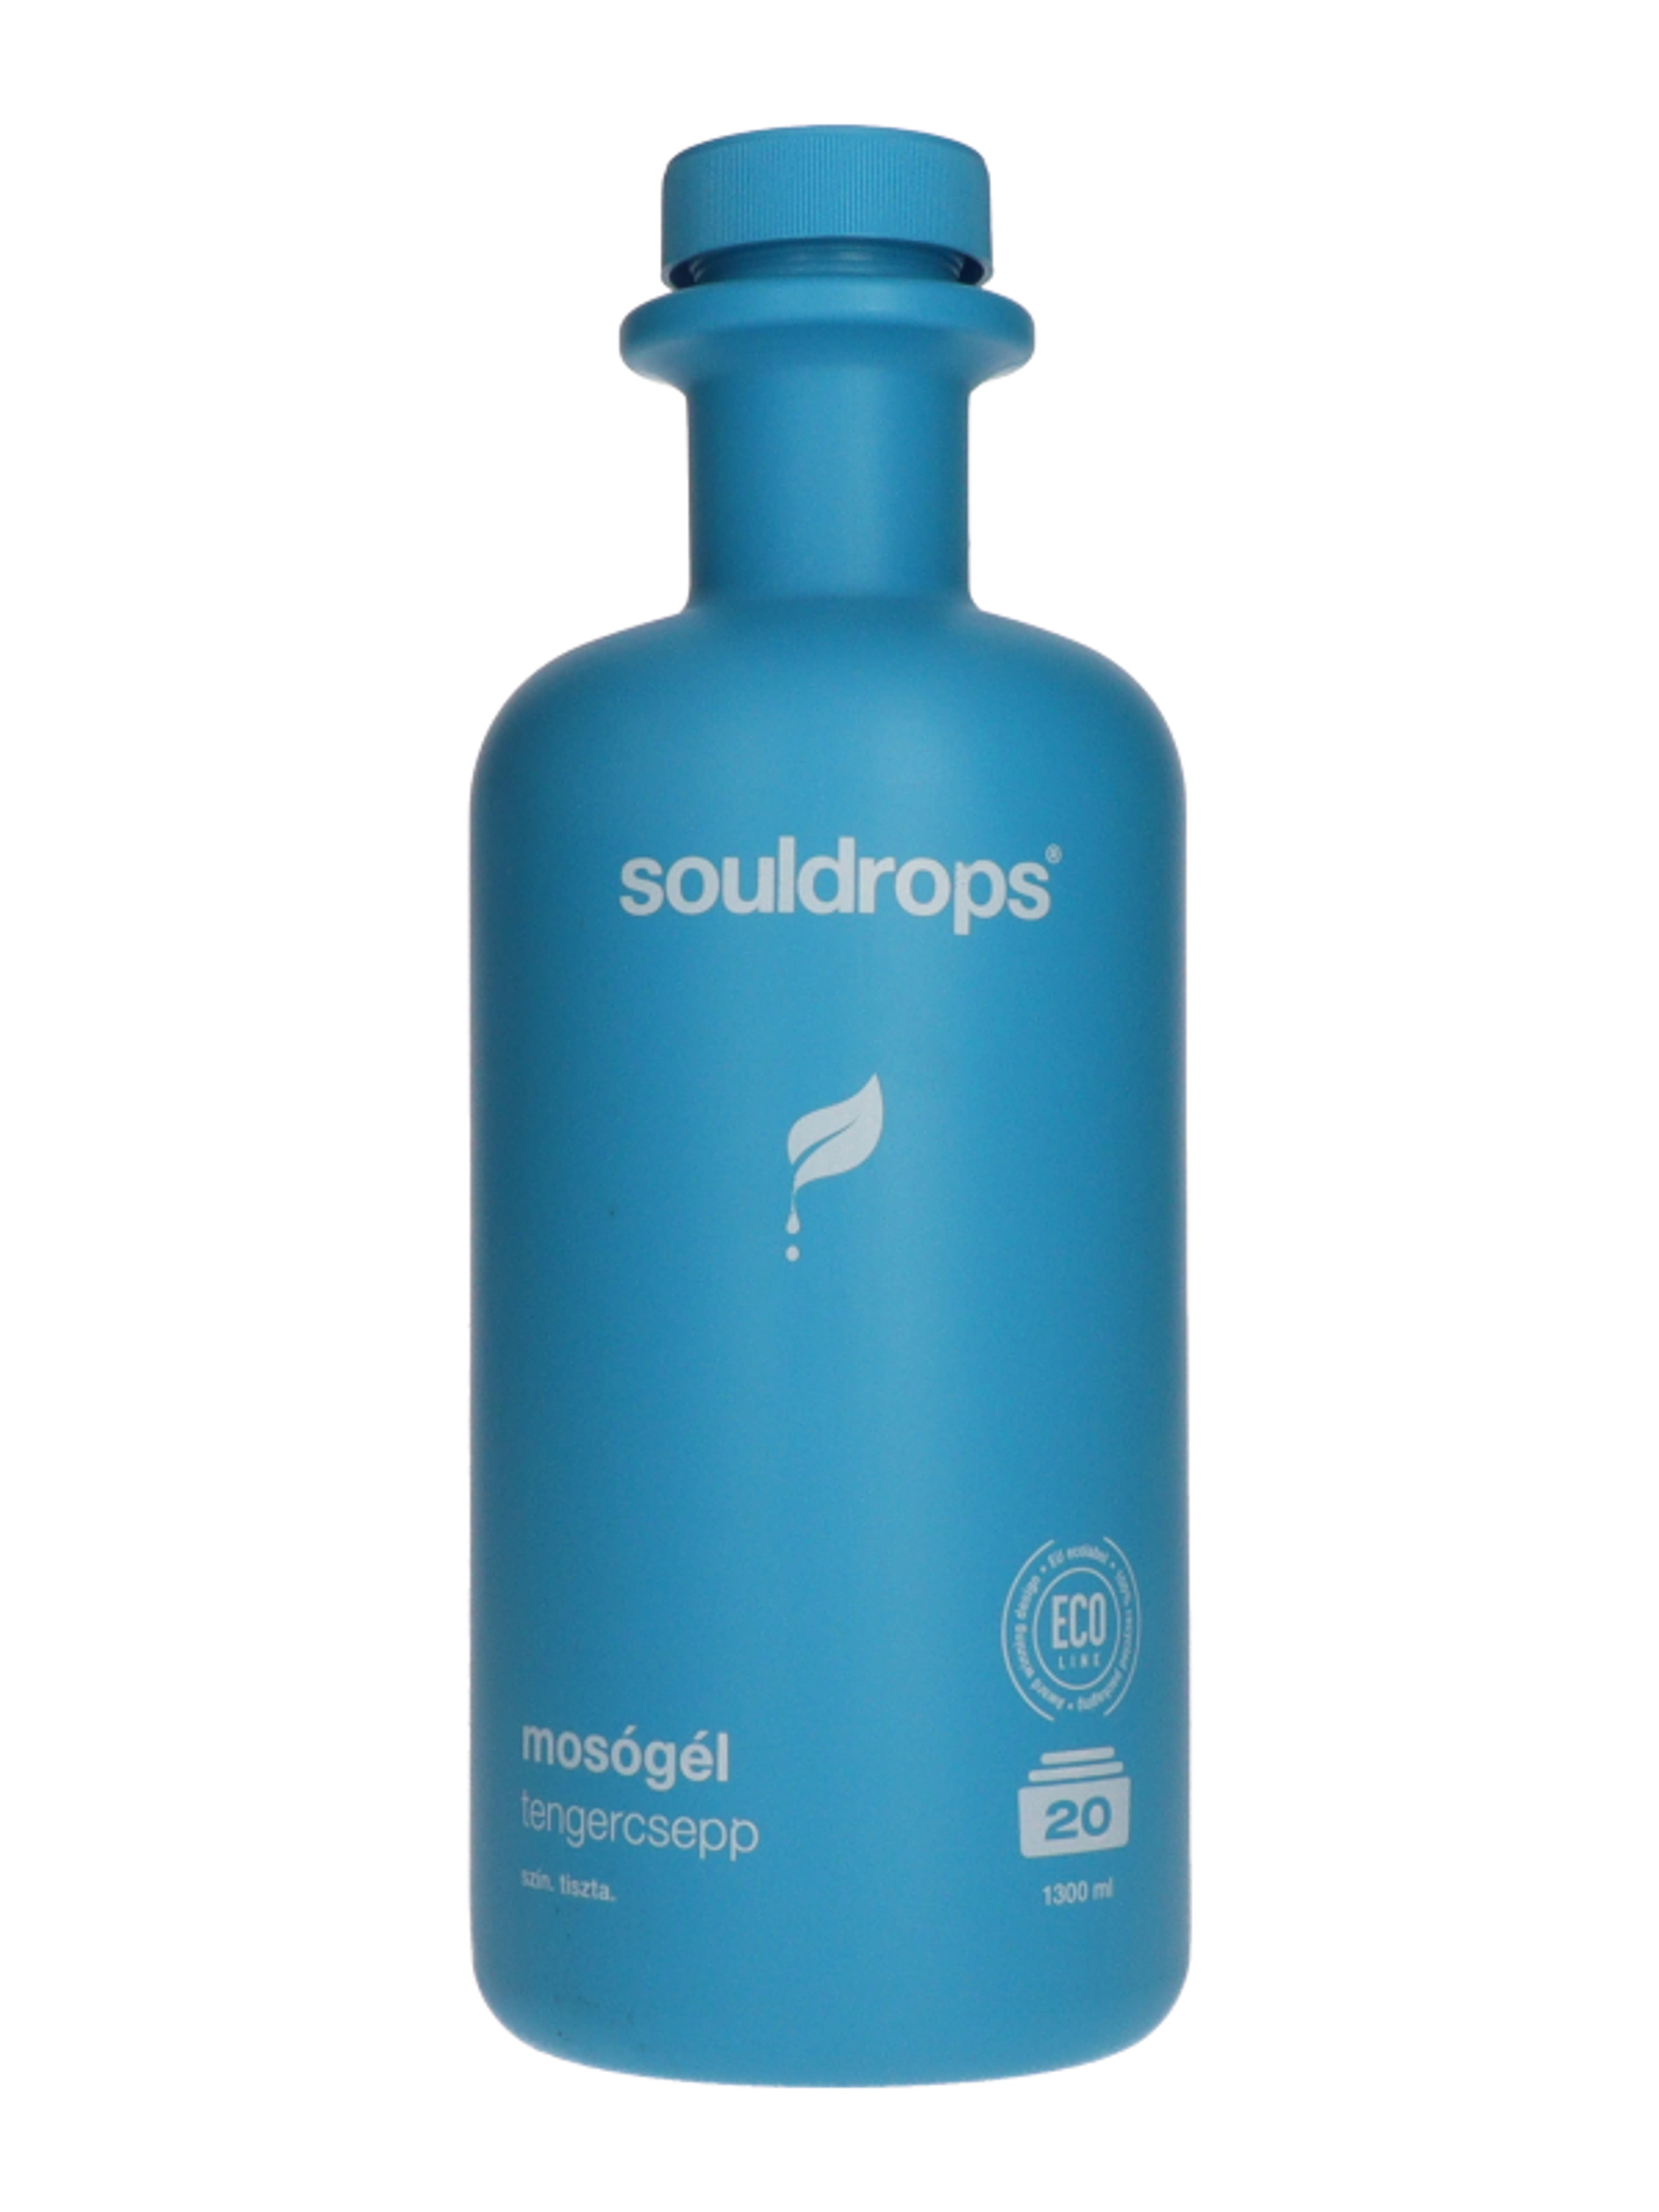 Souldrops Tengercsepp mosógél 20 mosás - 1300 ml-2